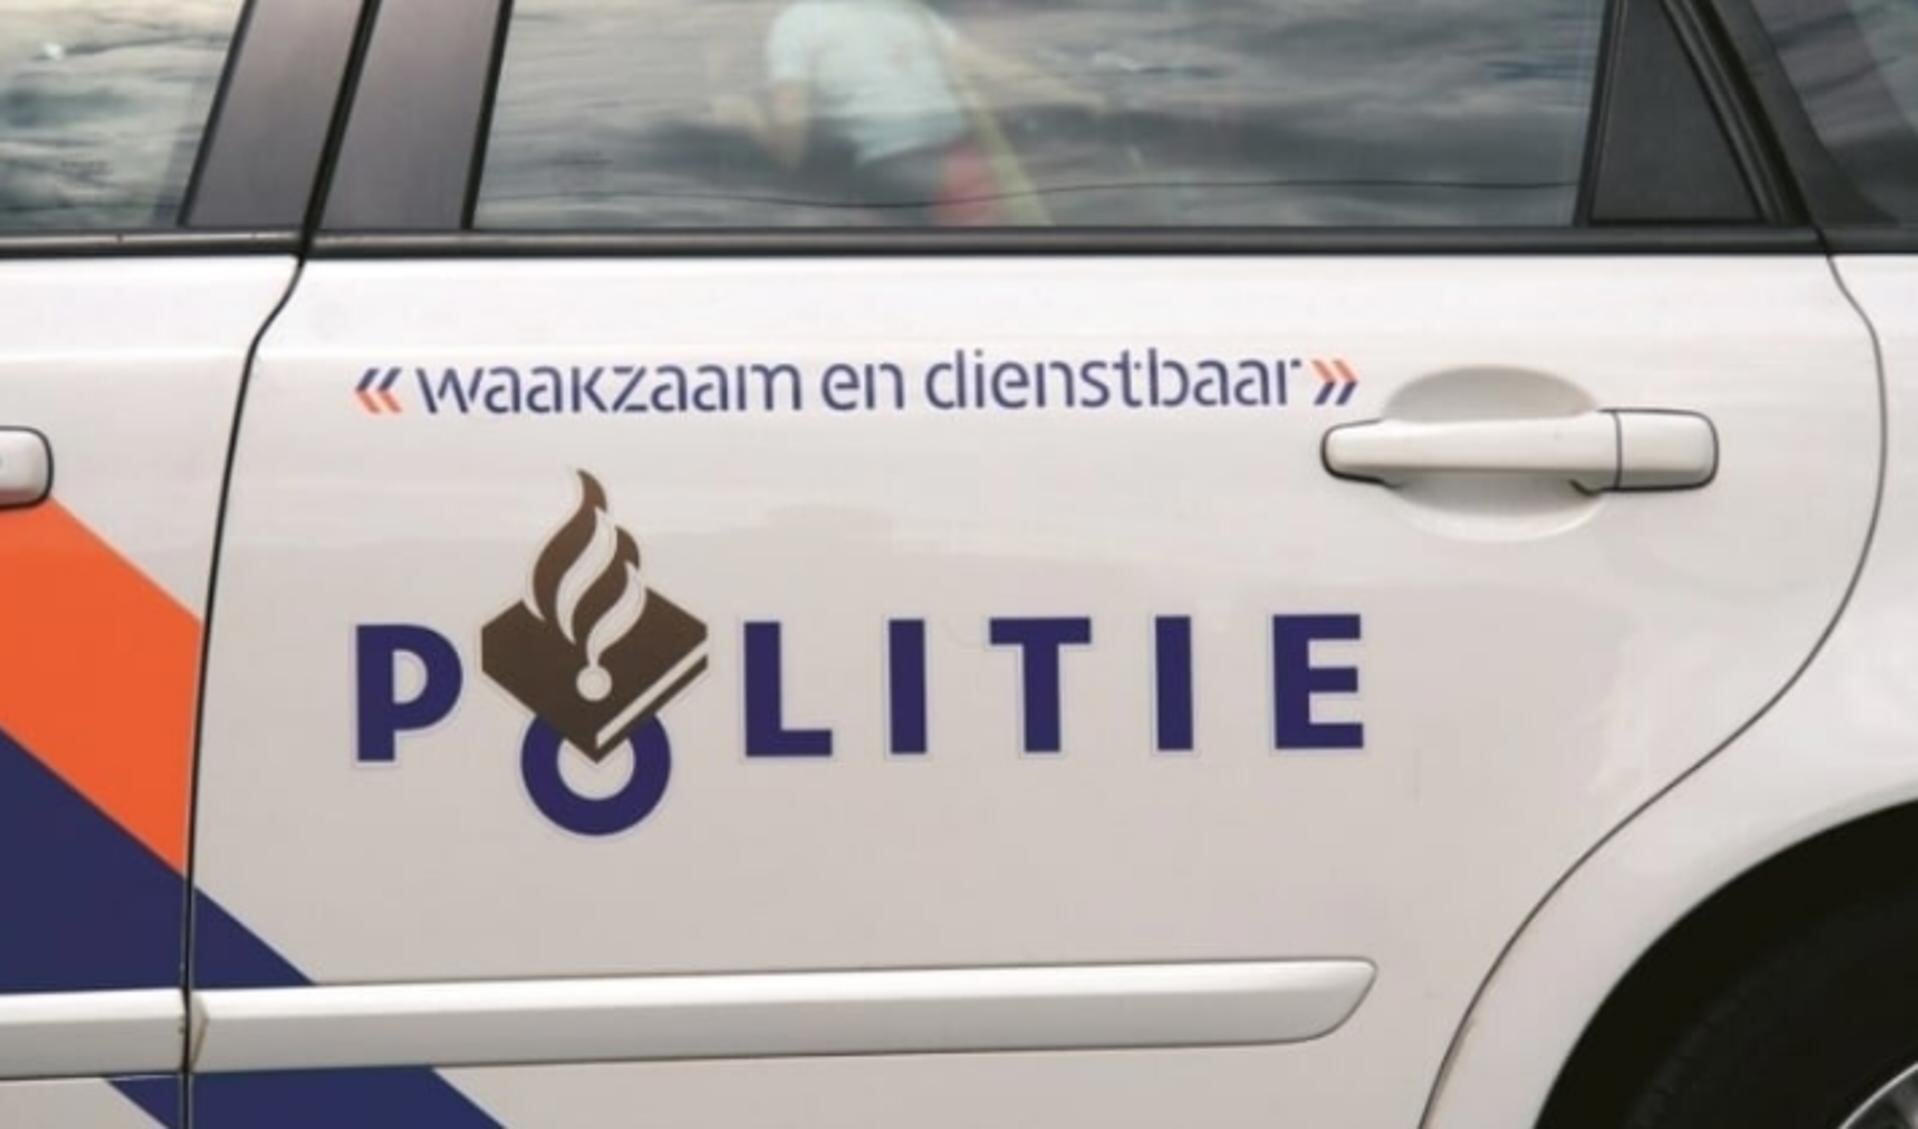 Een 59-jarige man uit Haarlem is in de nacht van donderdag op vrijdag aangehouden in Haarlem-Noord, nadat hij de politie ontvluchtte met een wilde rit door de regio als gevolg. 